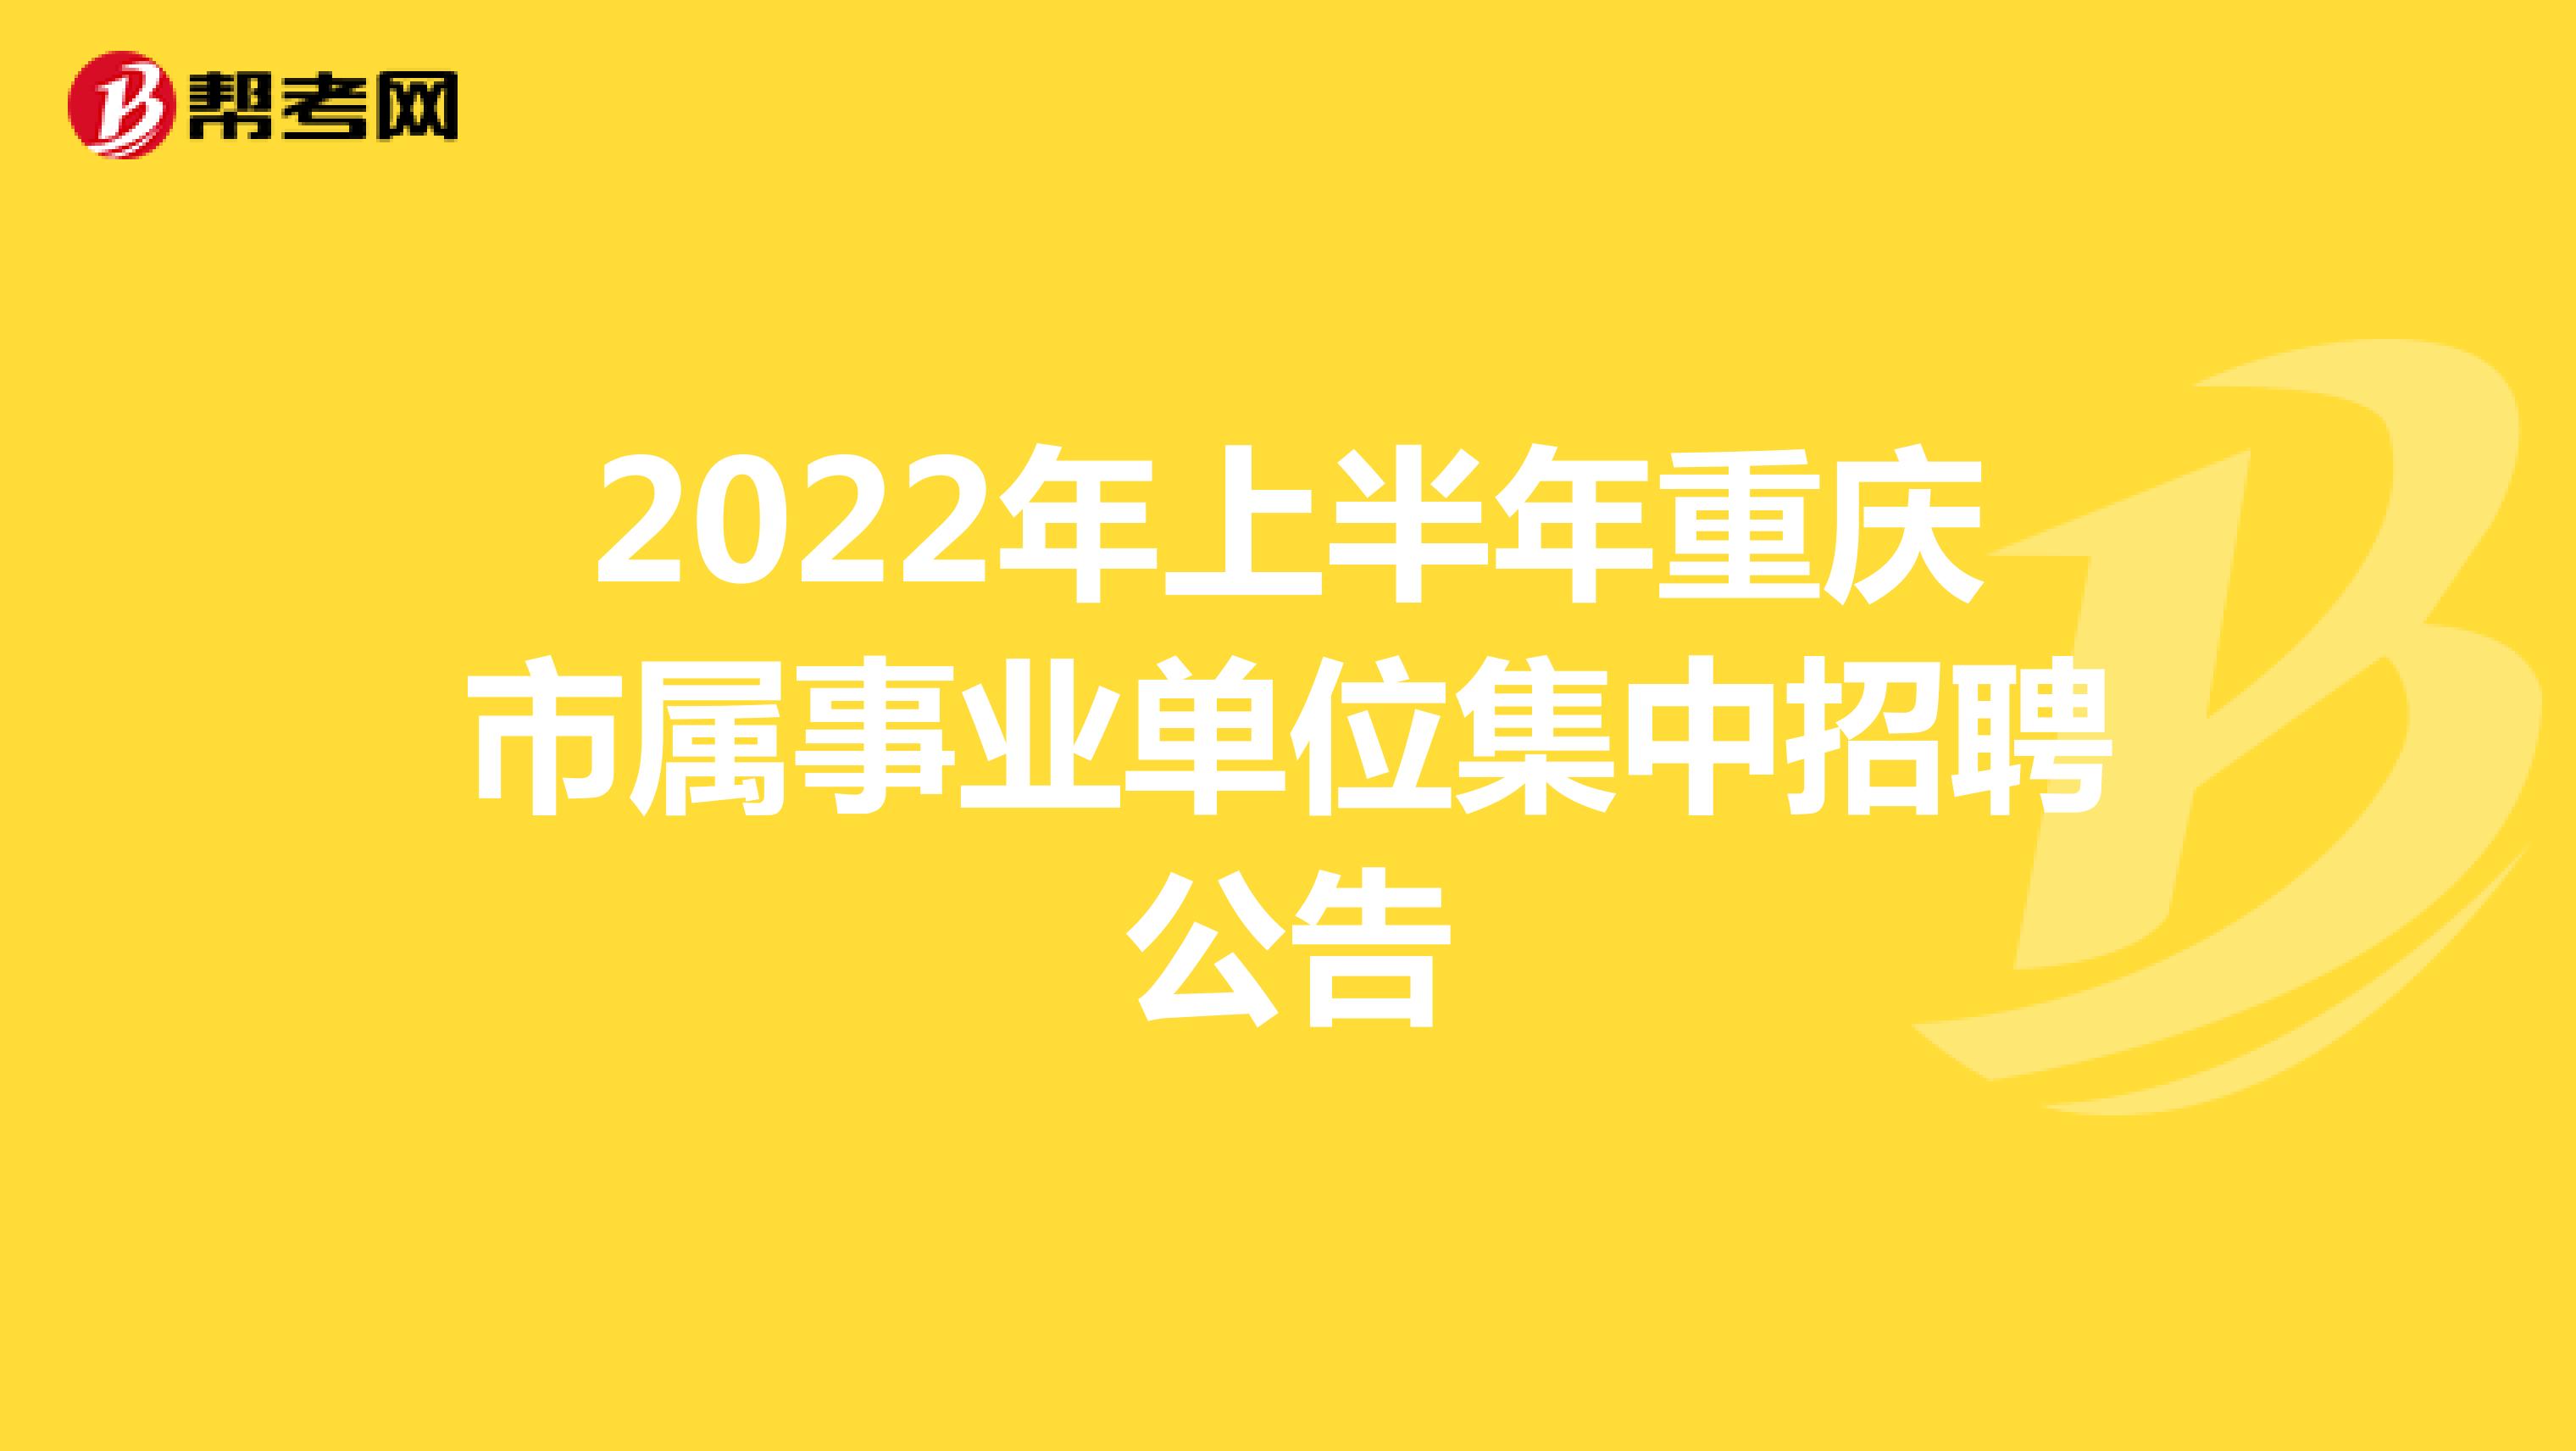 2022年上半年重庆市属事业单位集中招聘公告